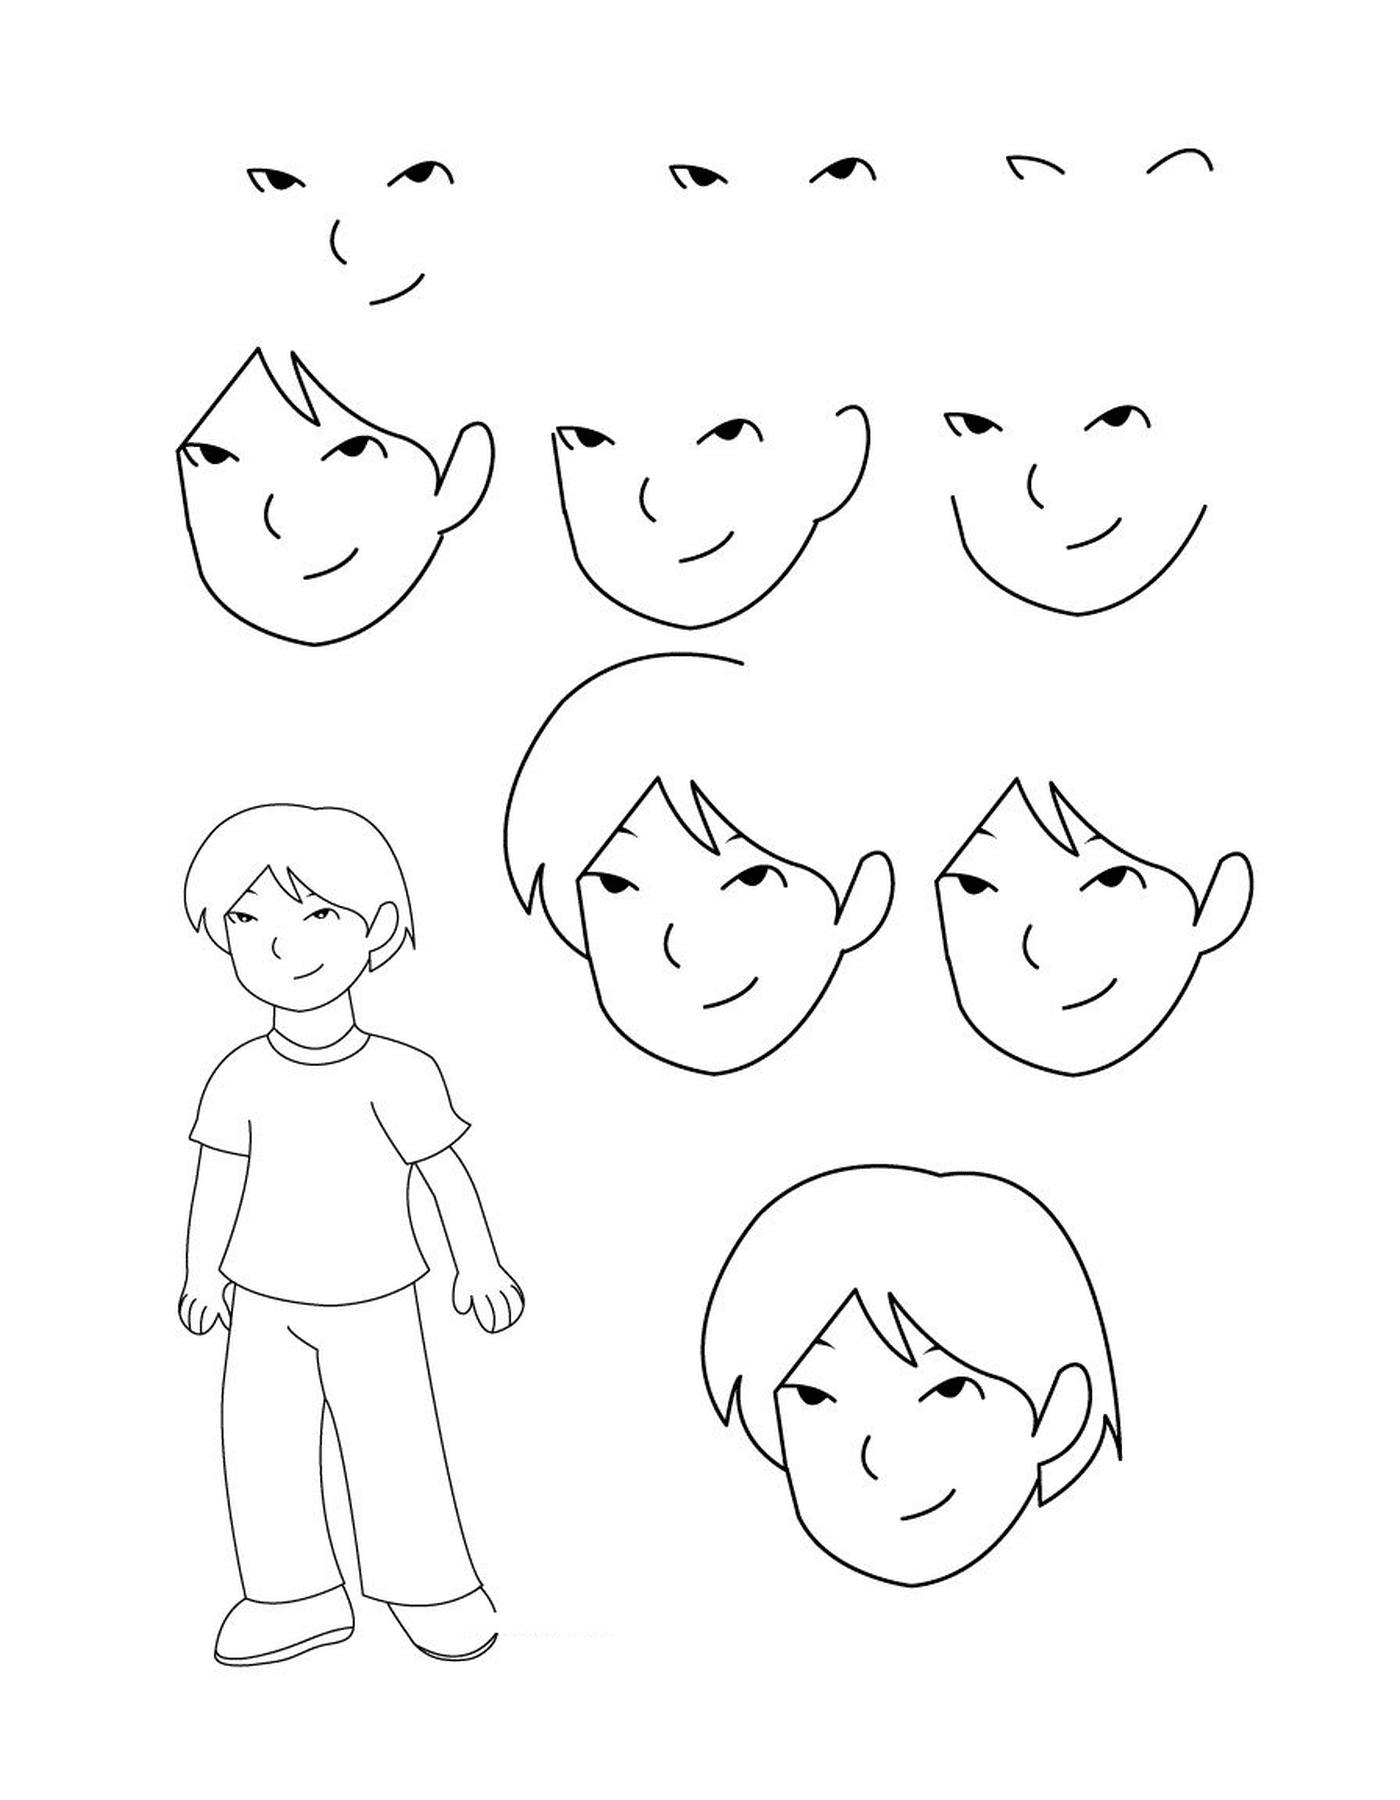  Como desenhar um menino 